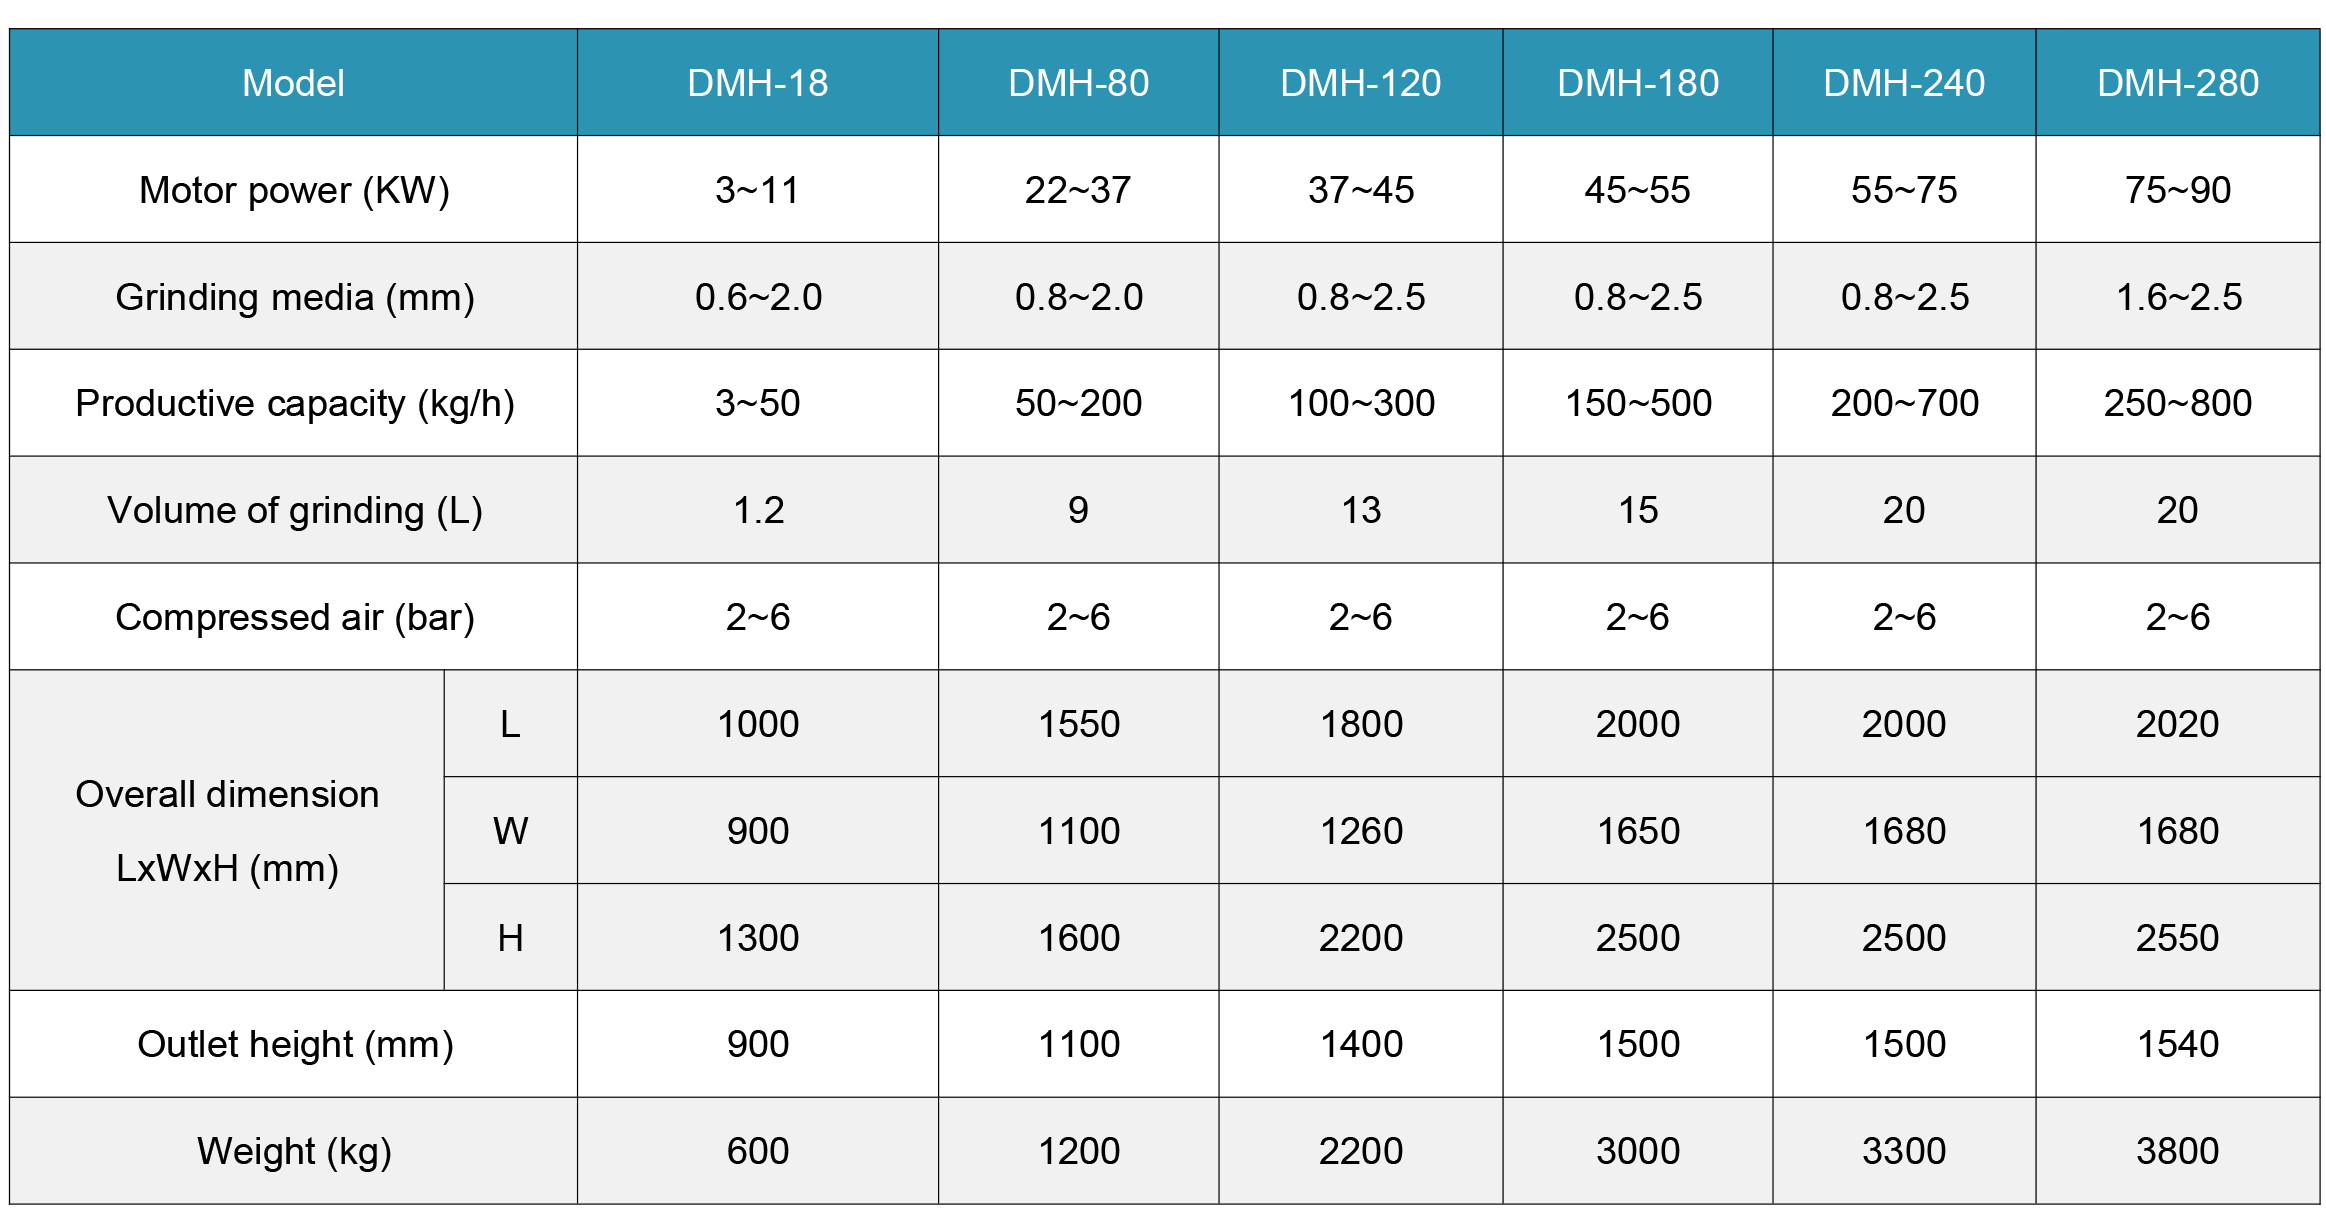 Dyno mills parameters